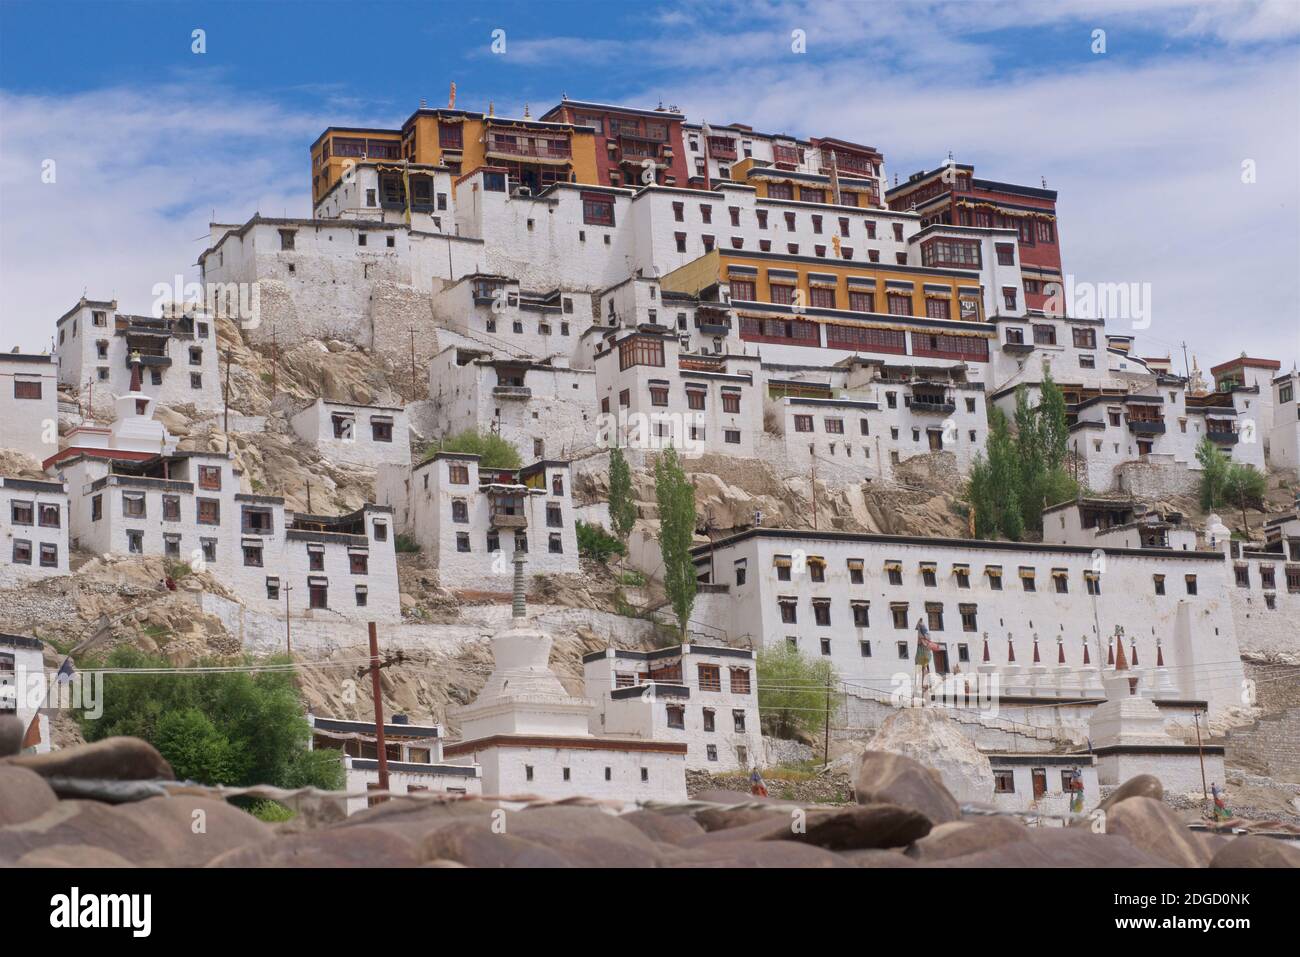 Thikse Gompa (monastère) domine le paysage environnant. Ladakh, Jammu-et-Cachemire, nord de l'Inde Banque D'Images